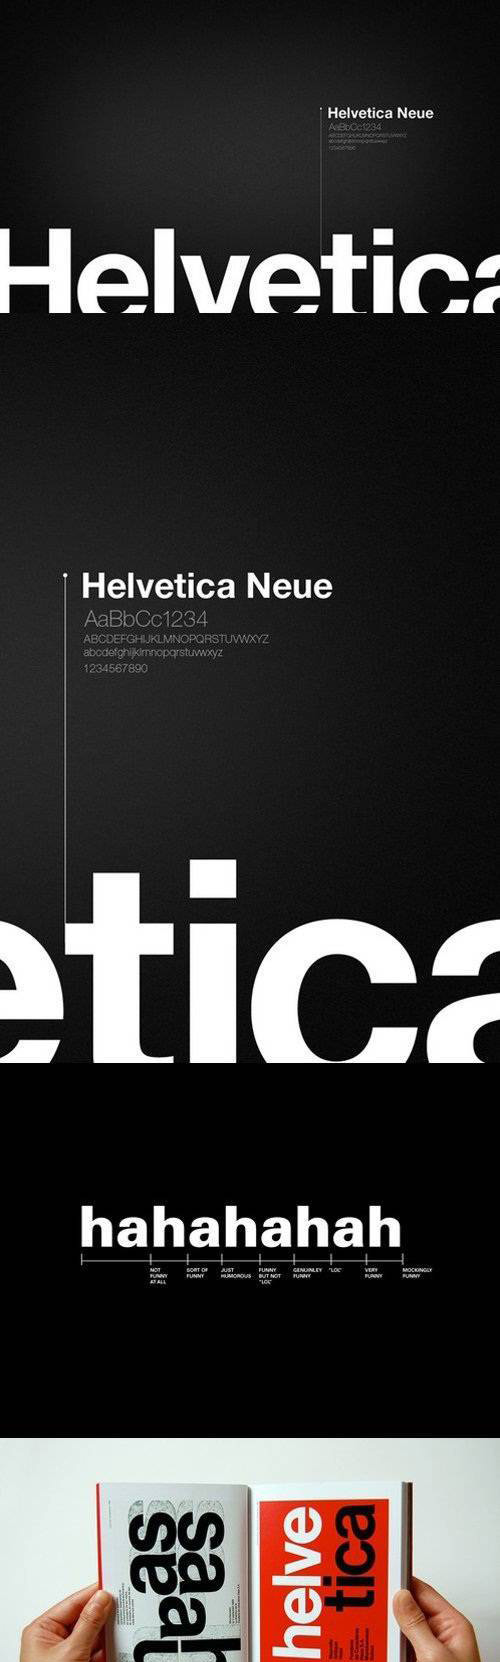 helvetica font kit